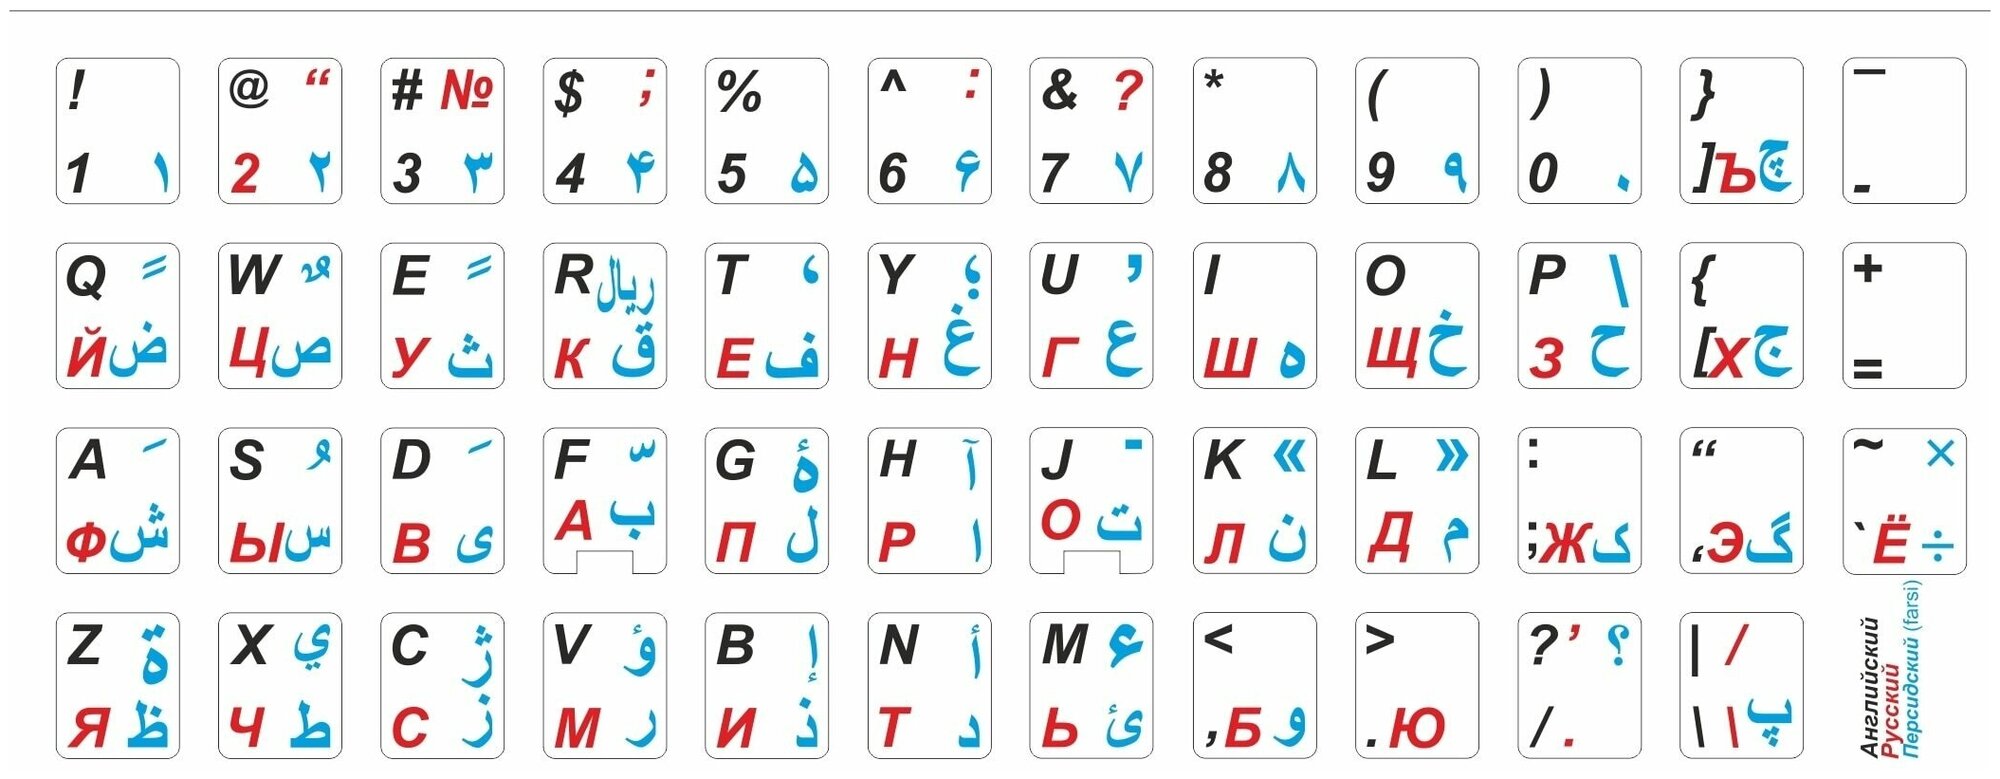 Персидскиe, английские, русские буквы на клавиатуру, Фарси (Farsi) символы, наклейки букв 11x13 мм.